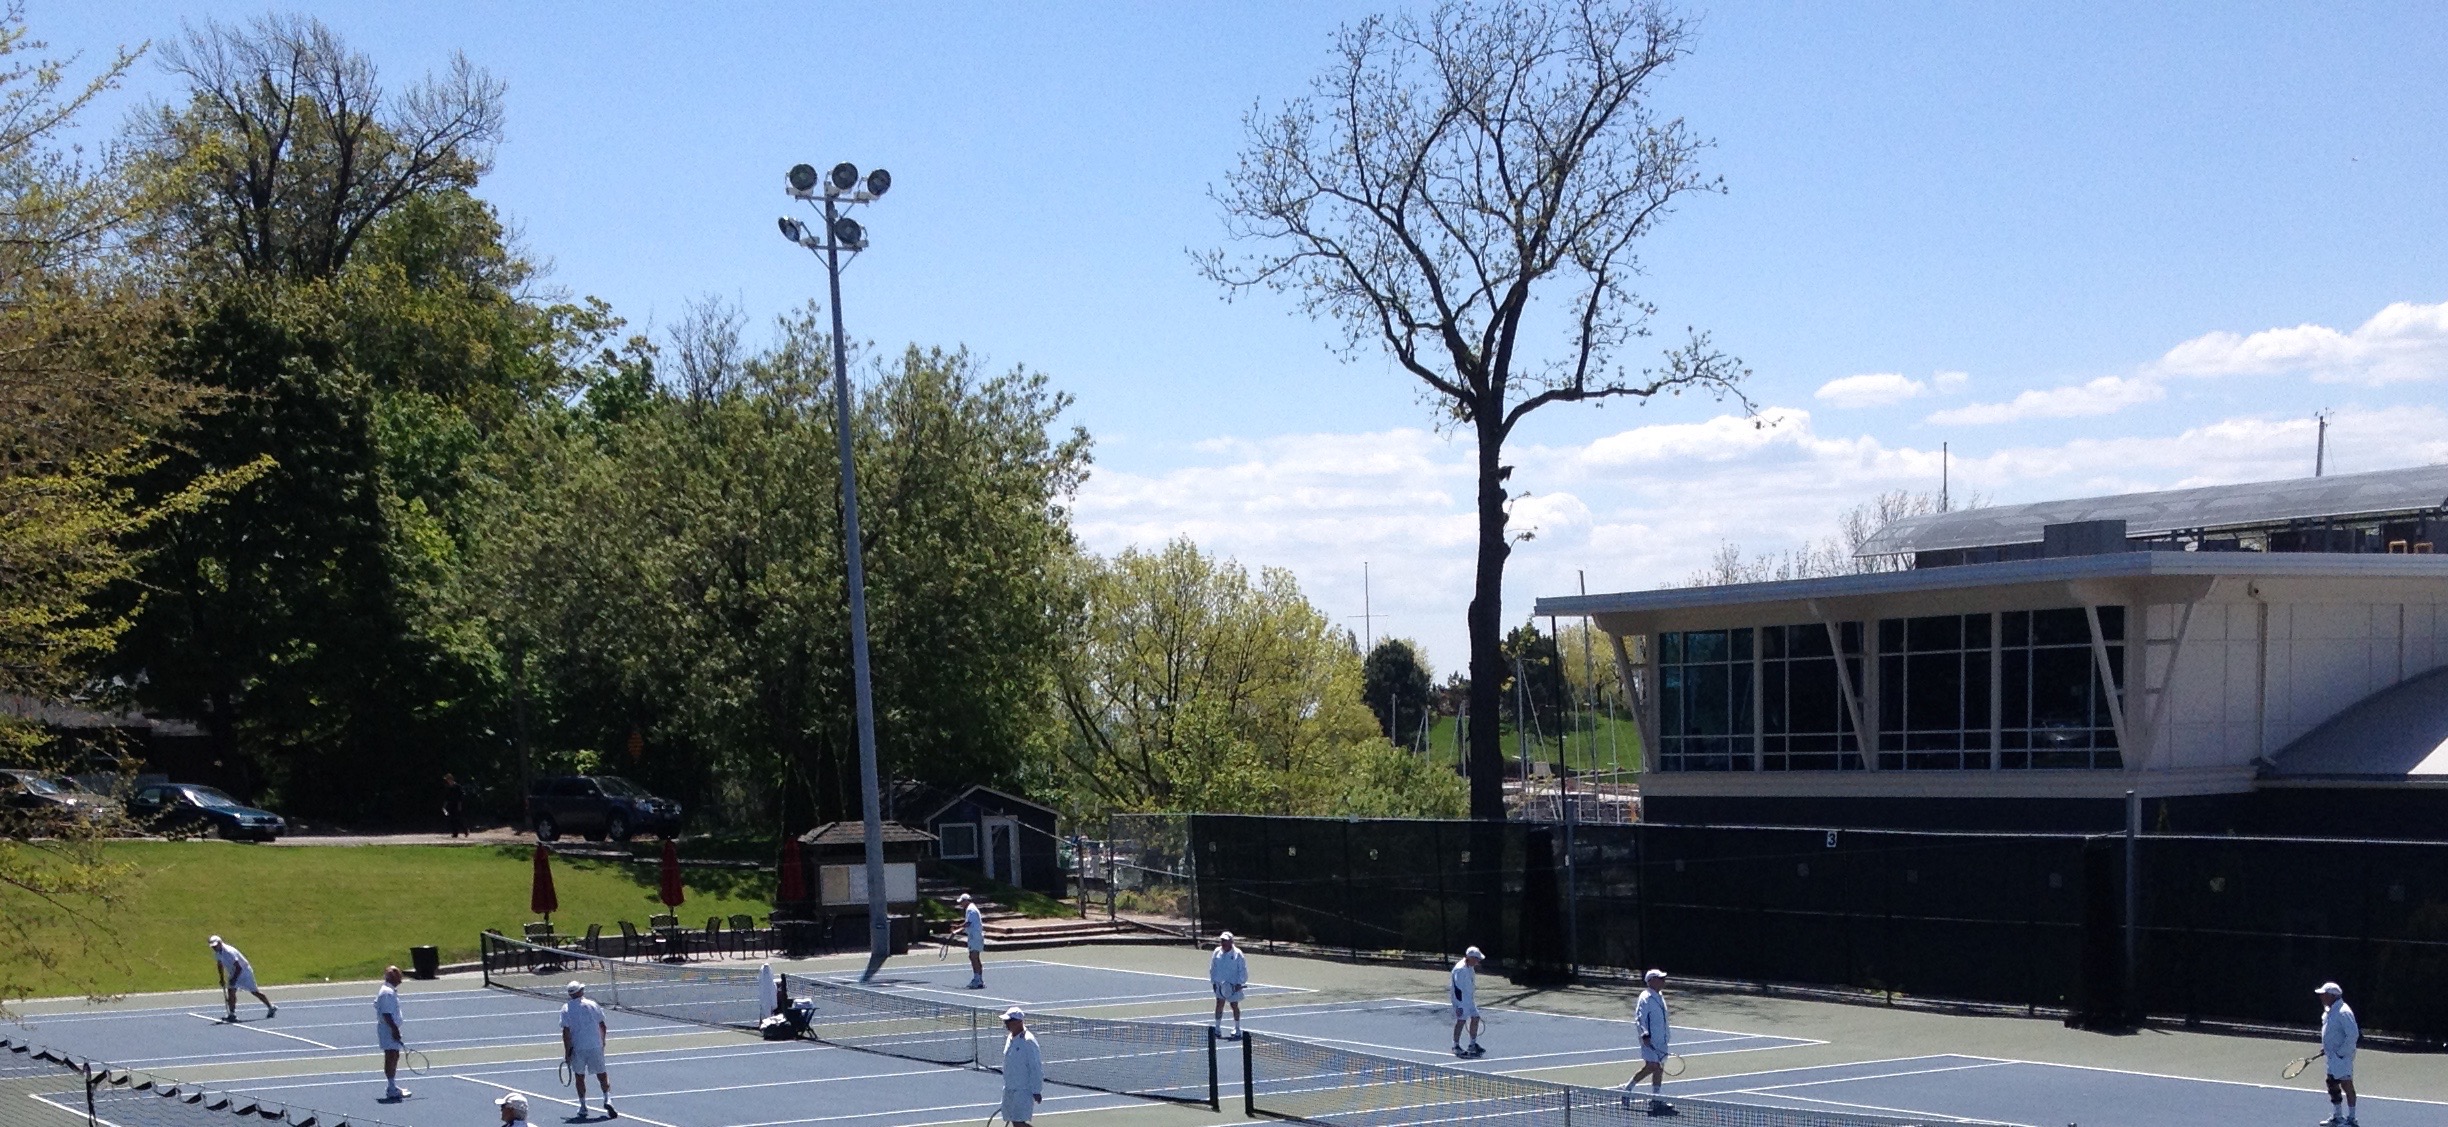 Enjoying a game of tennis | OakvilleNews.Org